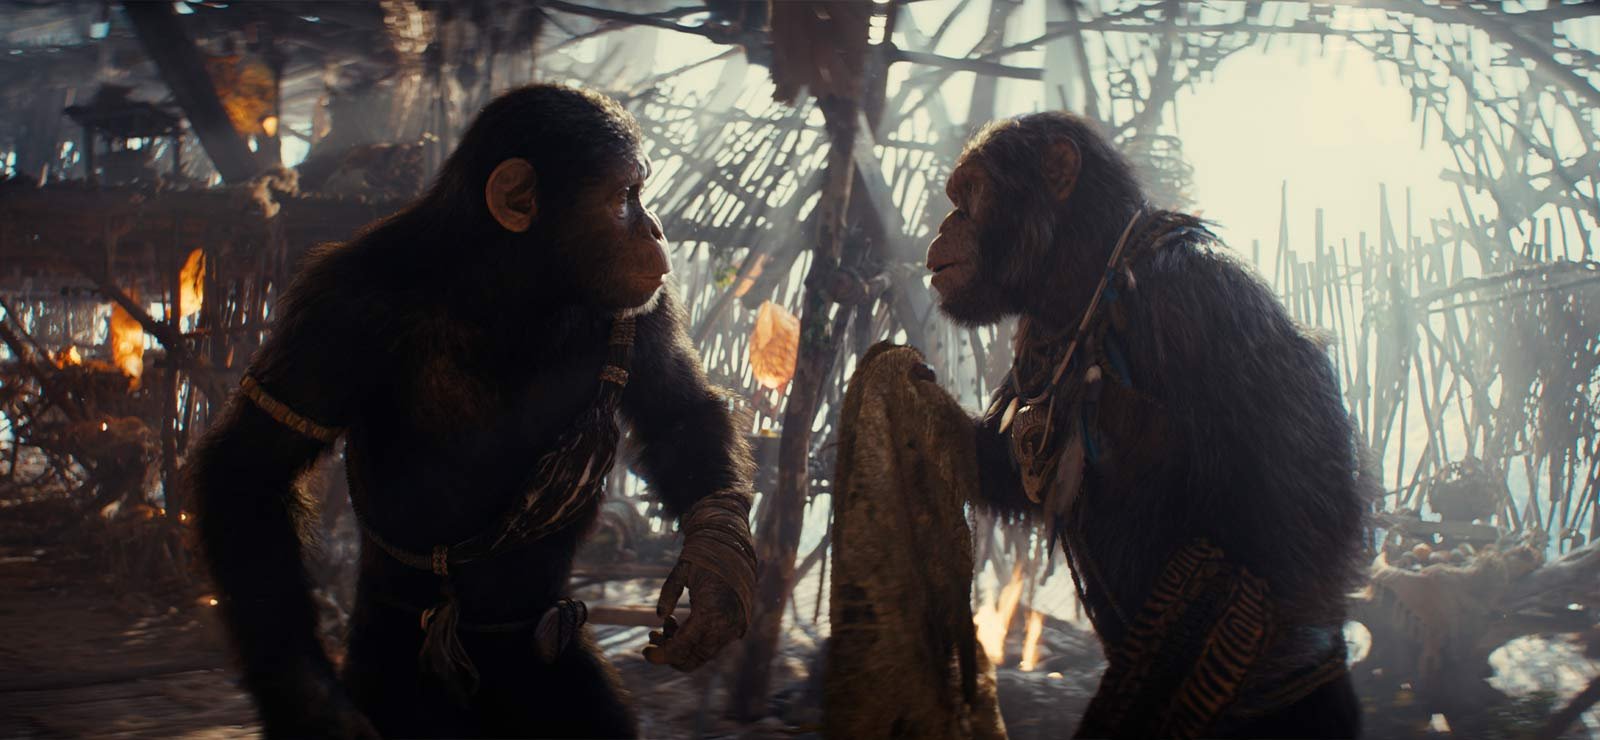 Planet of the Apes-franchisen fortsätter – ny bild från kommande filmen